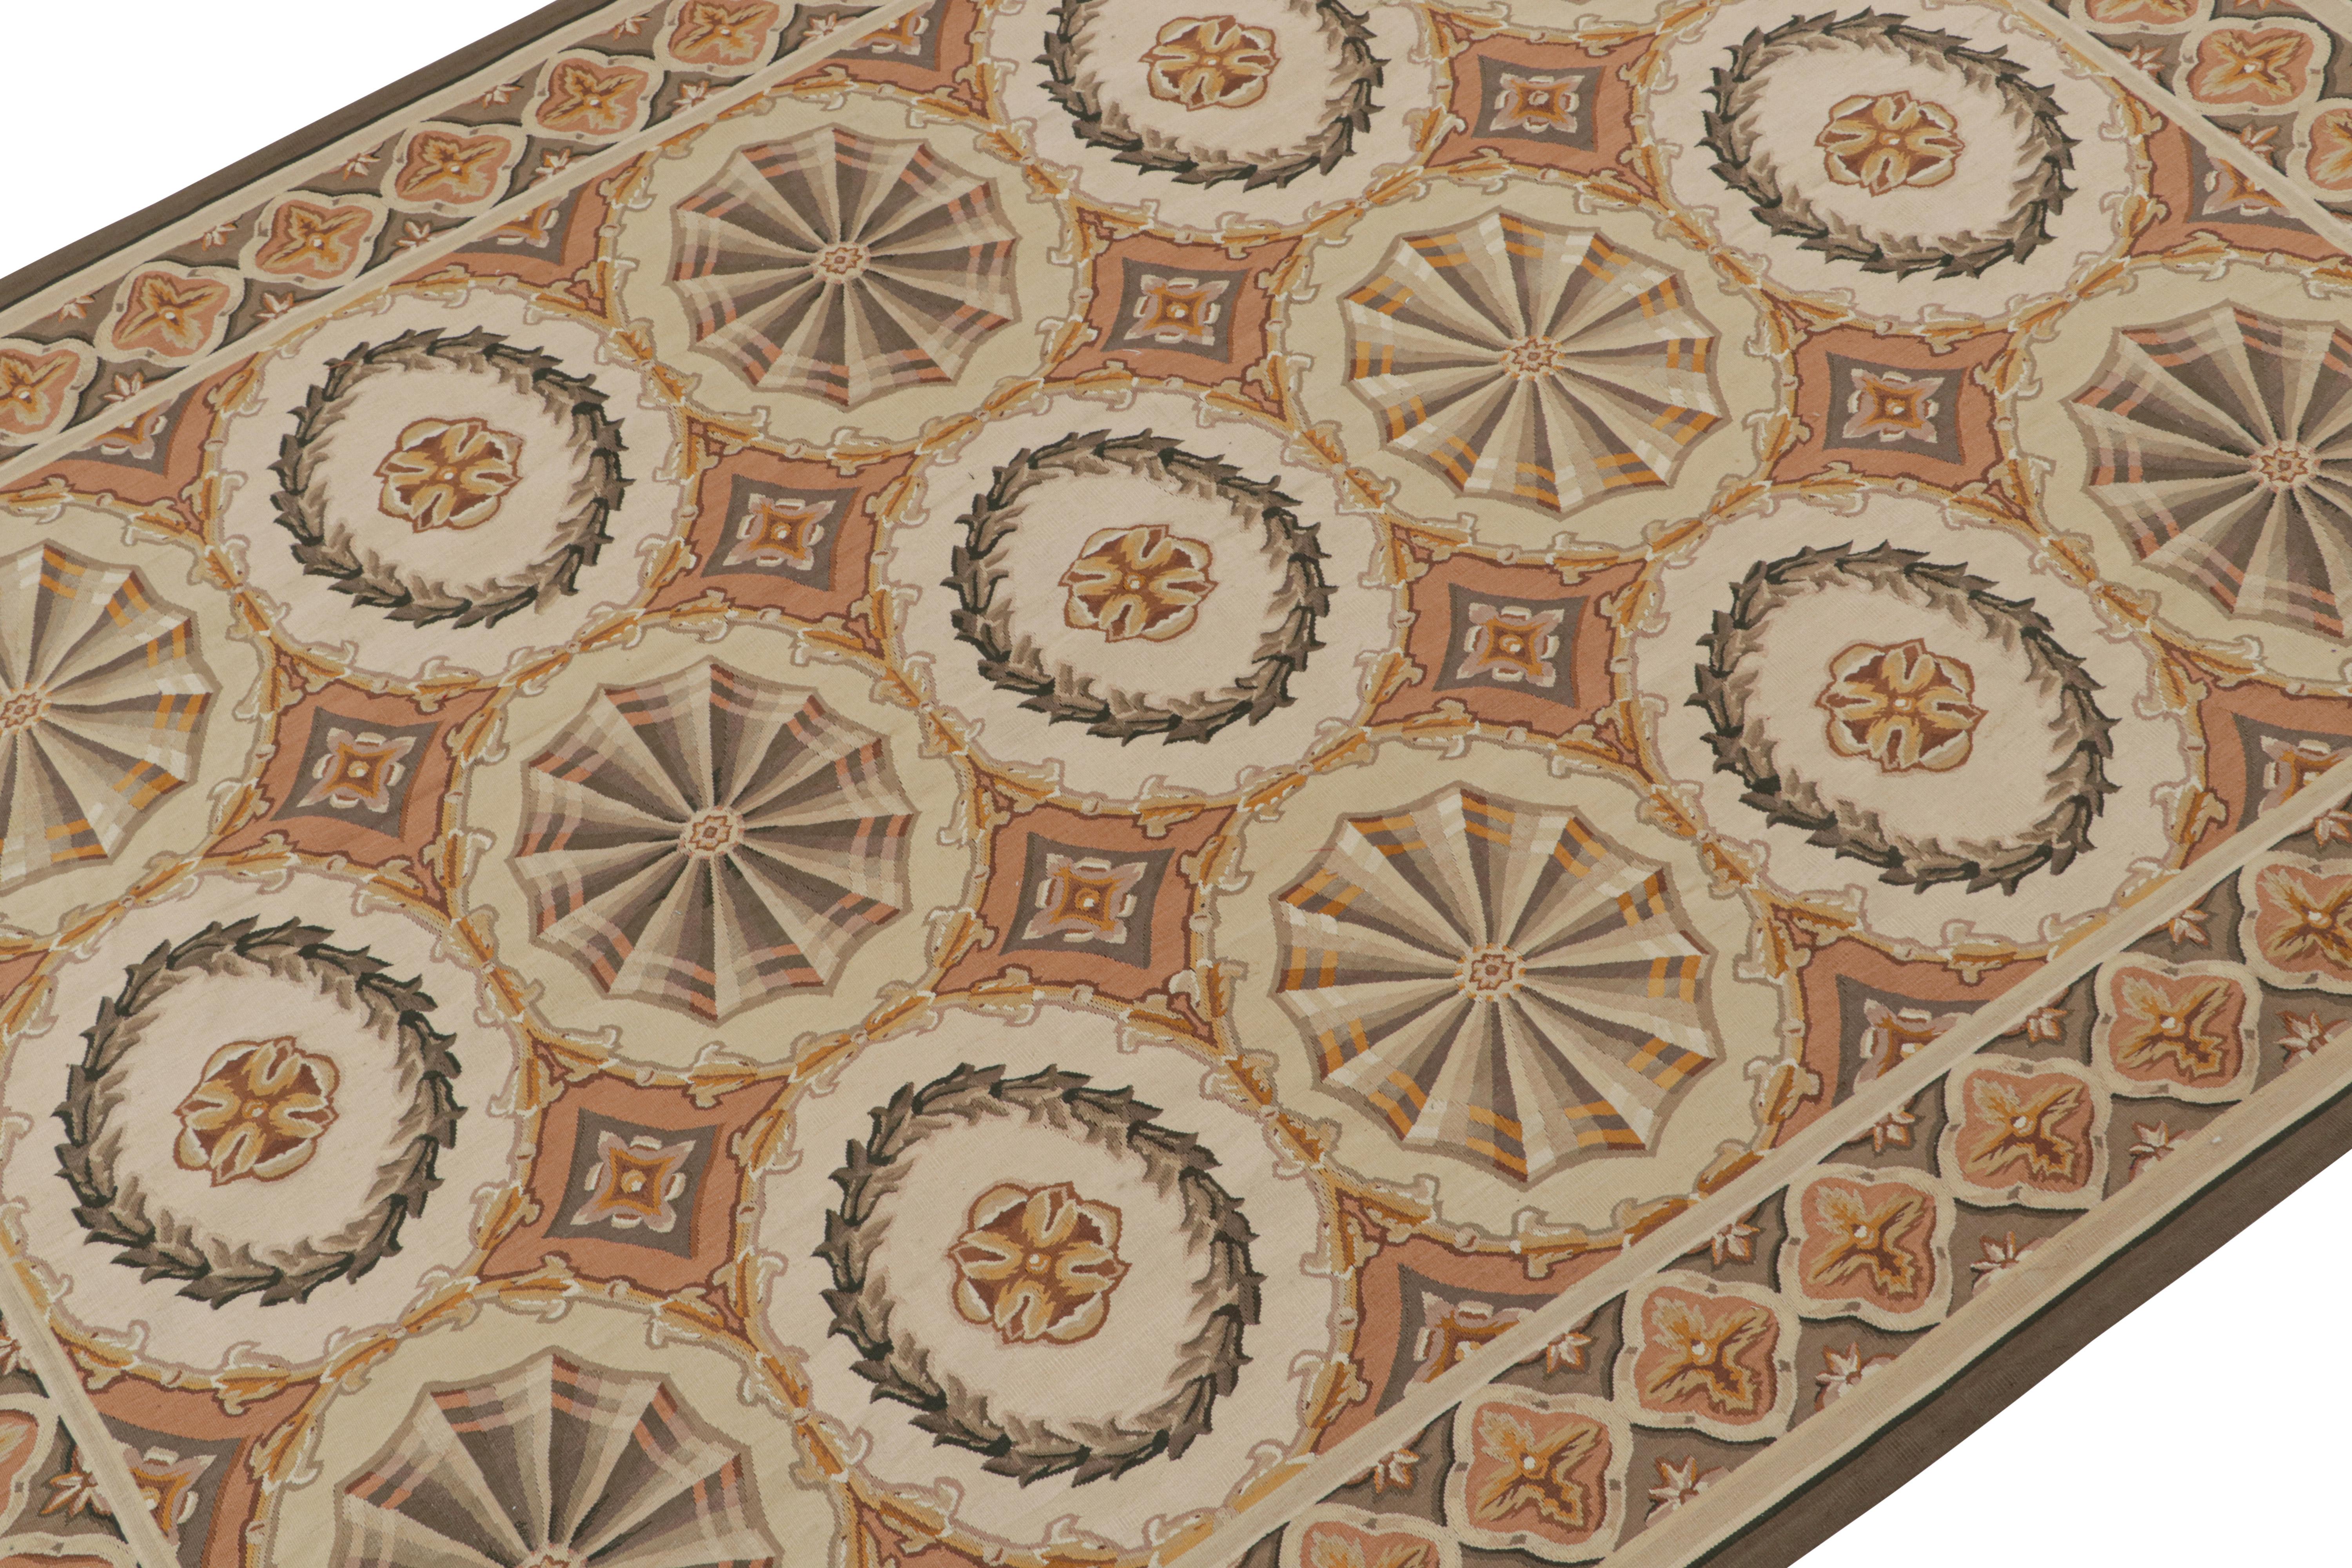 Tissé à la main en laine, ce kilim 8x10 est une nouveauté de la Collection européenne de Rug & Kilim, inspirée des tissages plats d'Aubusson du XVIIIe siècle.

Sur le Design : 

Ce tapis présente une répétition de cartouches, de médaillons et de